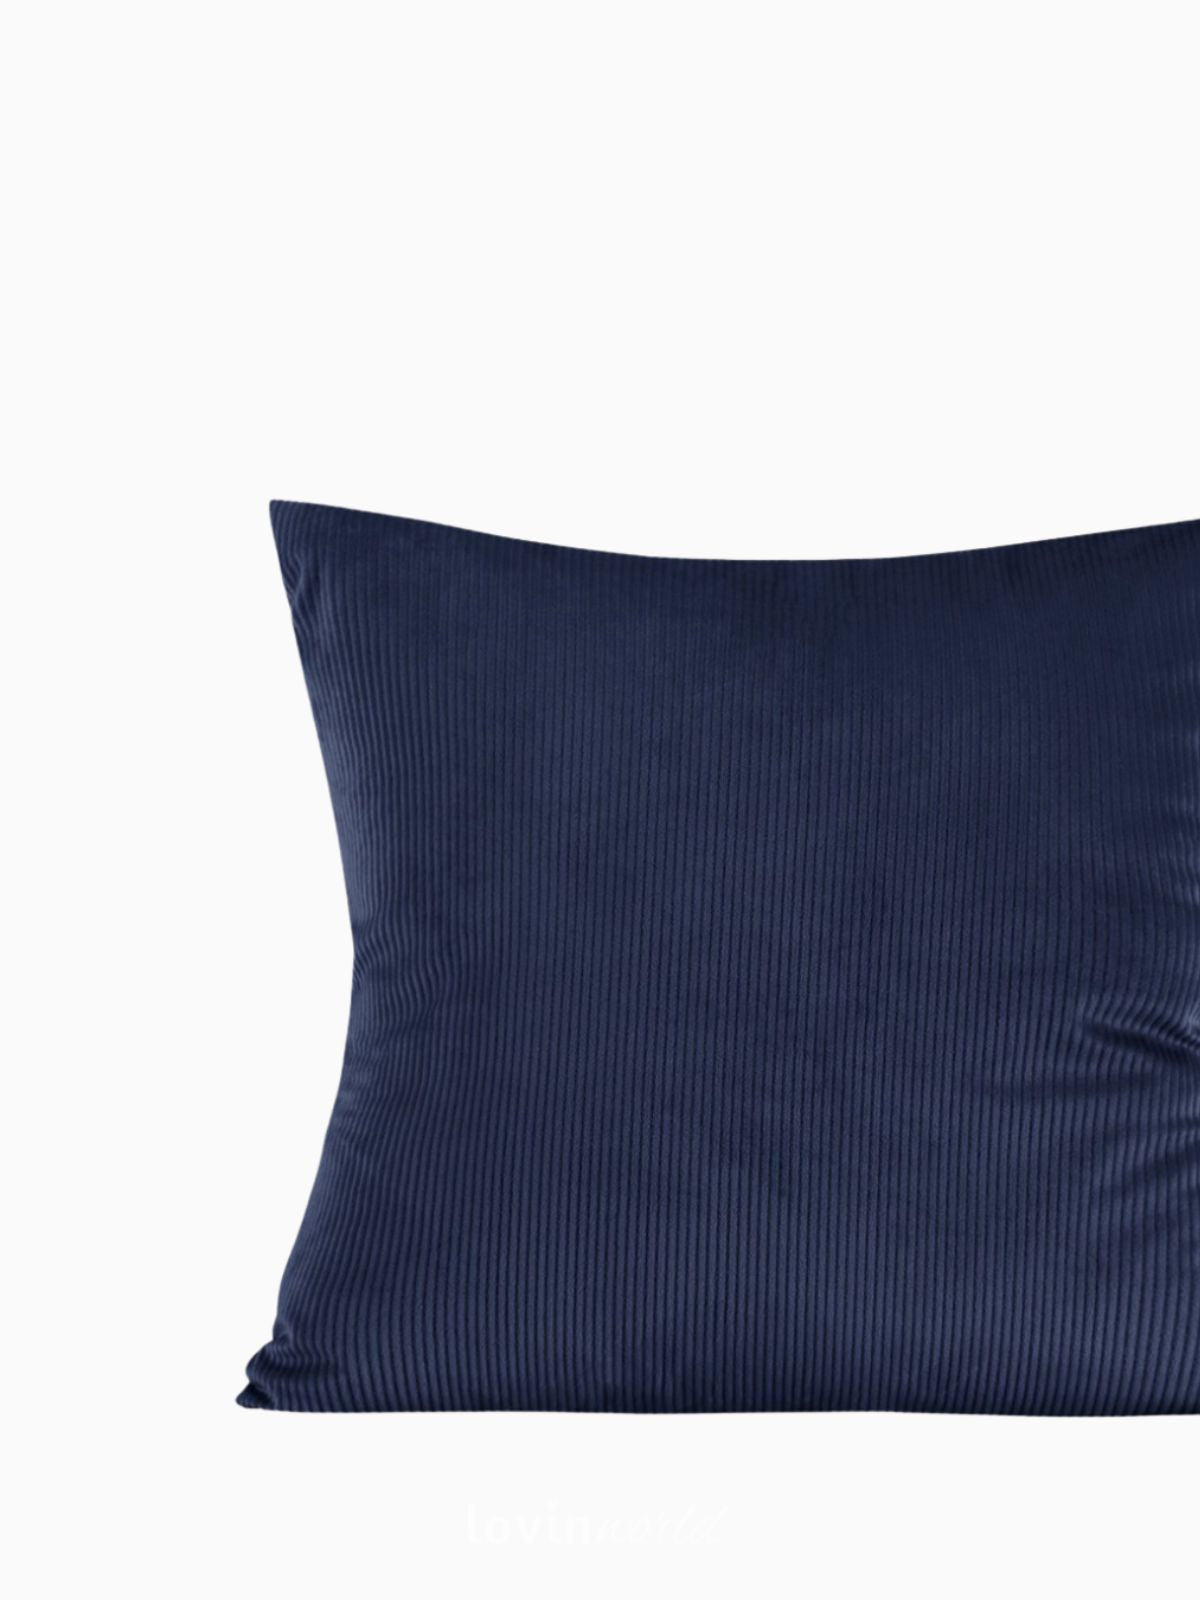 Cuscino decorativo in velluto Duffy, colore blu 45x45 cm.-3